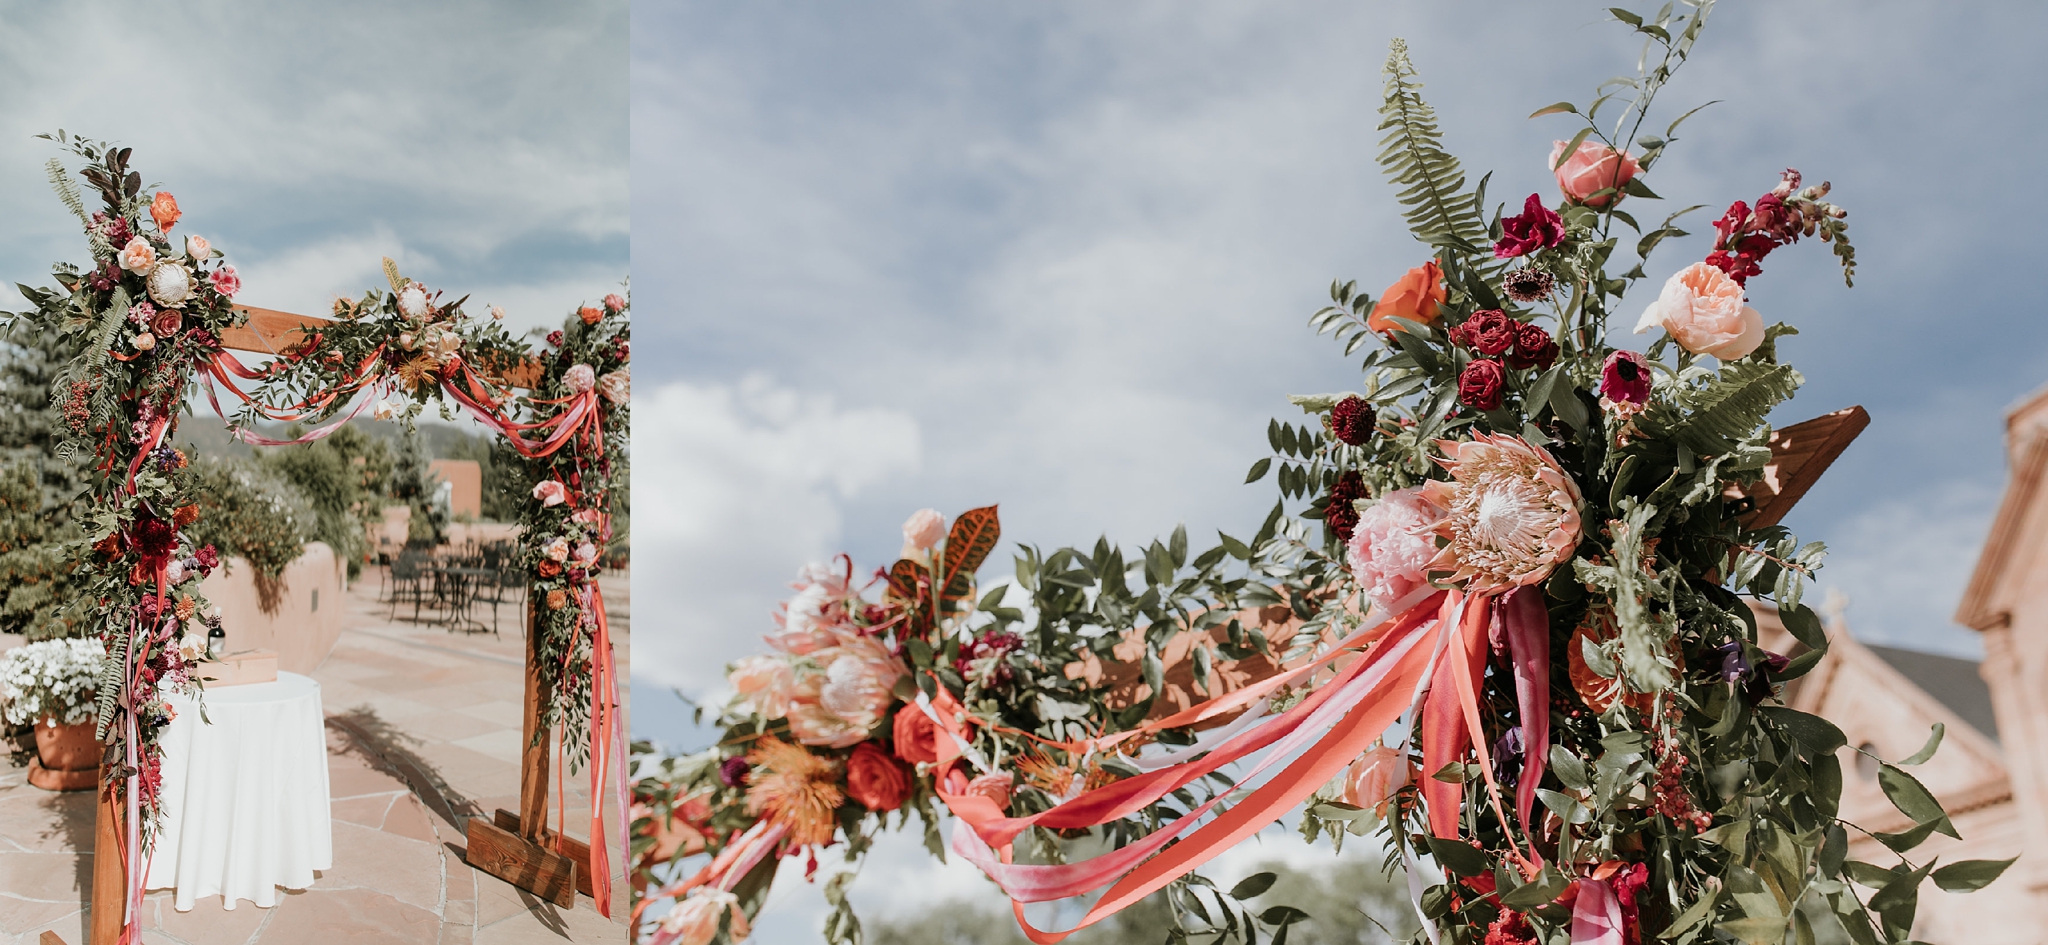 Alicia+lucia+photography+-+albuquerque+wedding+photographer+-+santa+fe+wedding+photography+-+new+mexico+wedding+photographer+-+wedding+ceremony+-+wedding+alter+-+floral+alter_0025.jpg